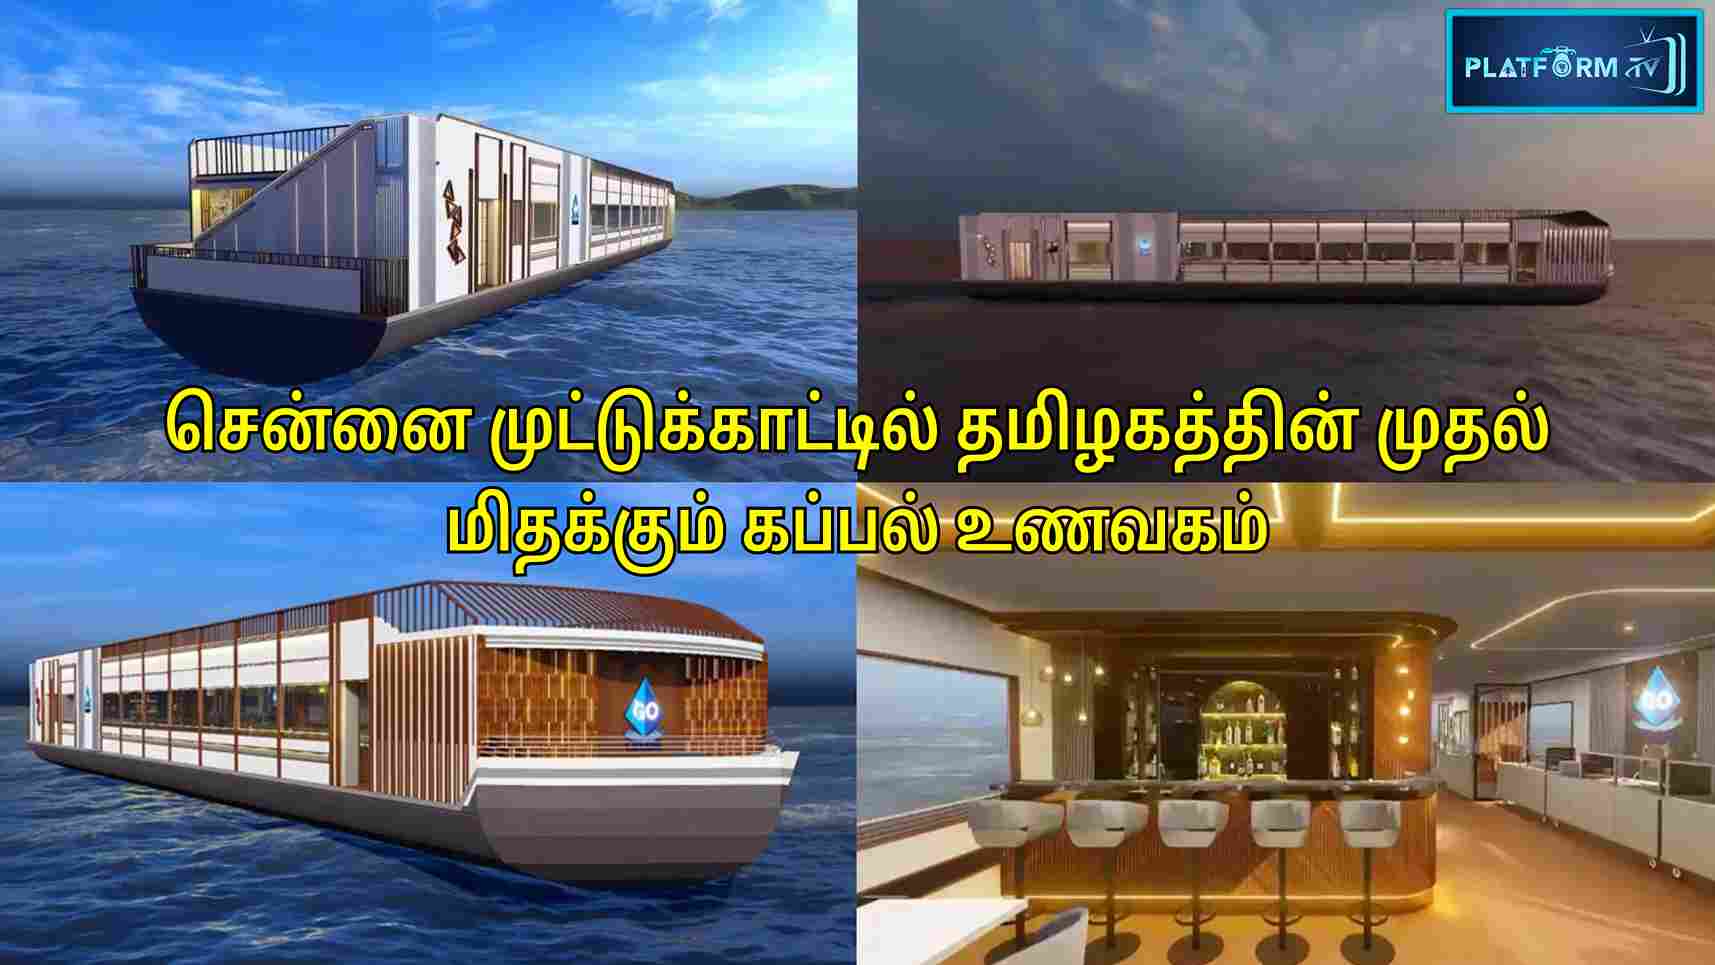 TN's First Floating Ship Restaurant - Platform Tamil